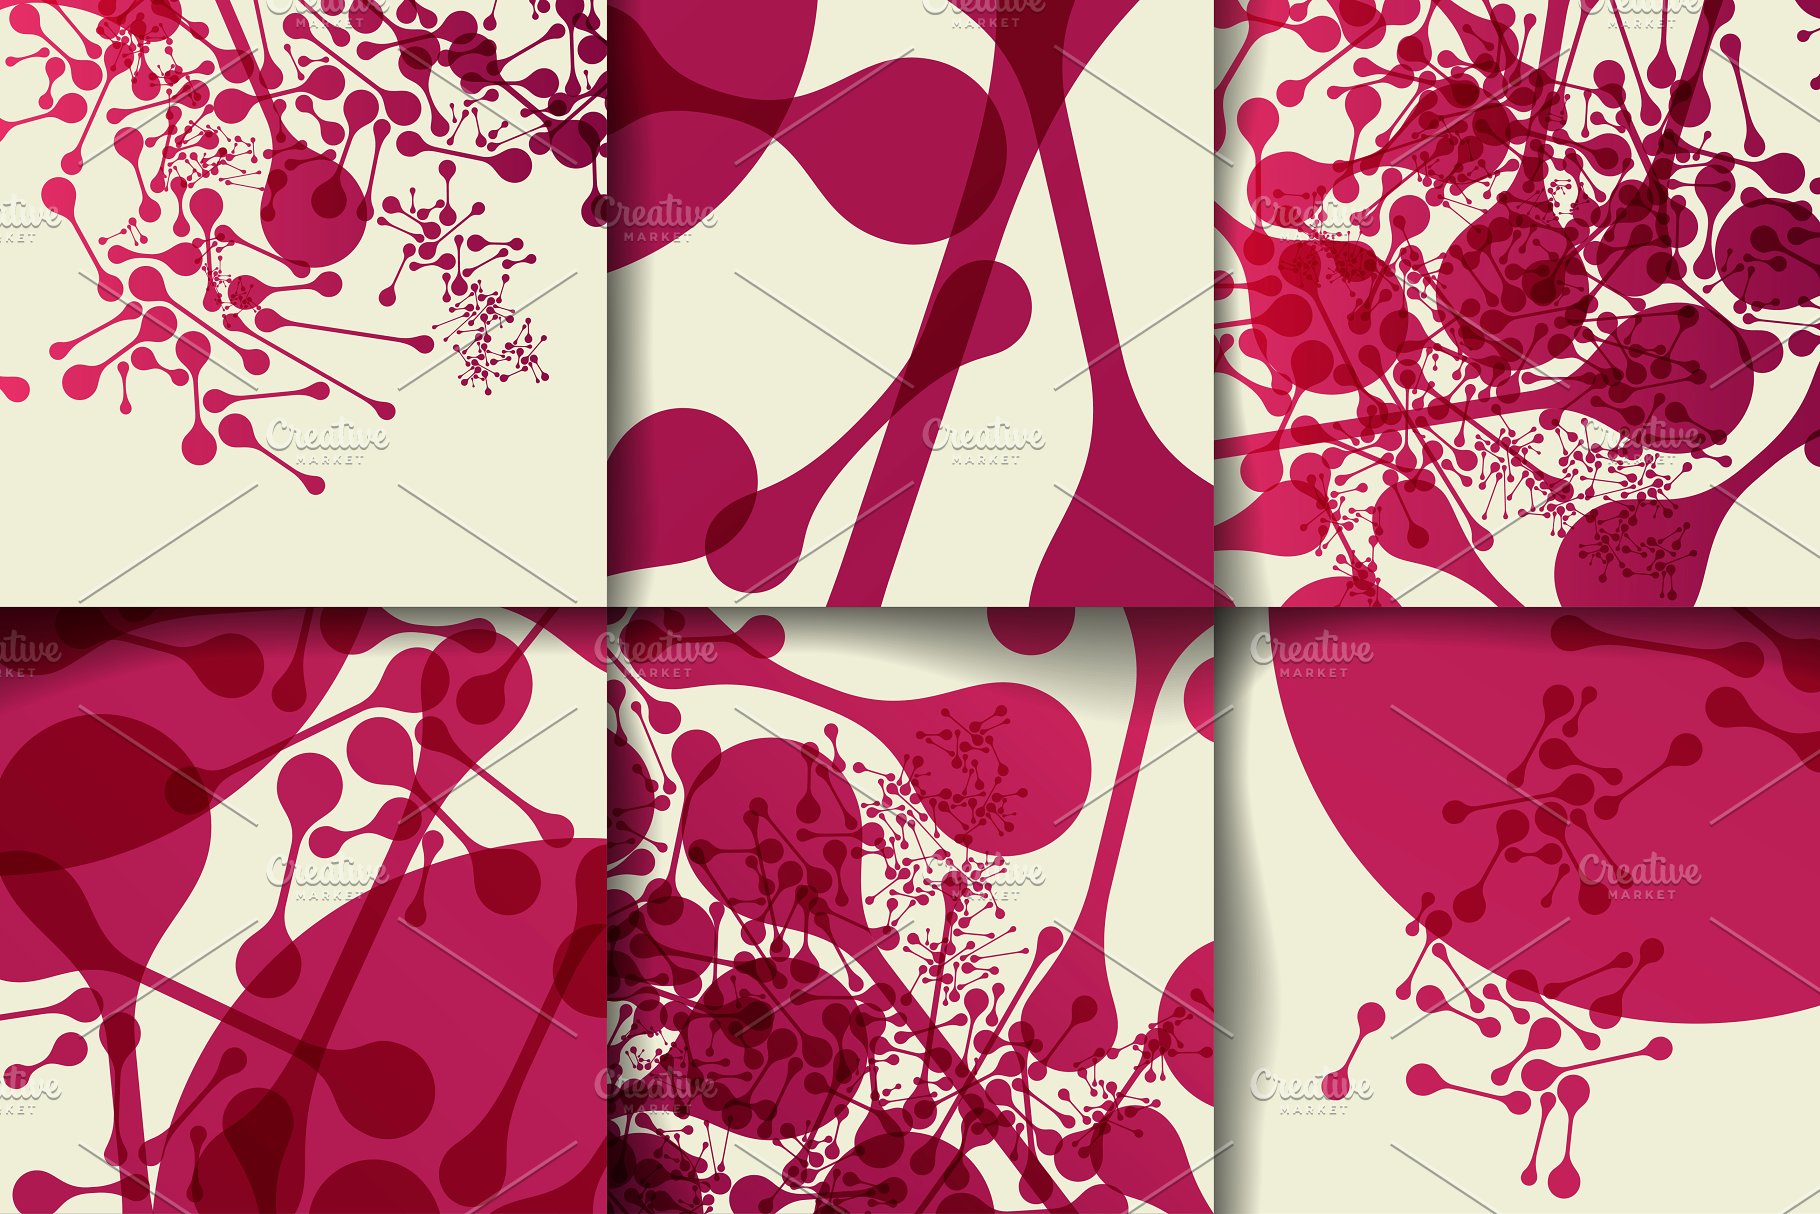 抽象几何图案背景纹理素材 Abstract Templates and Backgrounds插图(5)